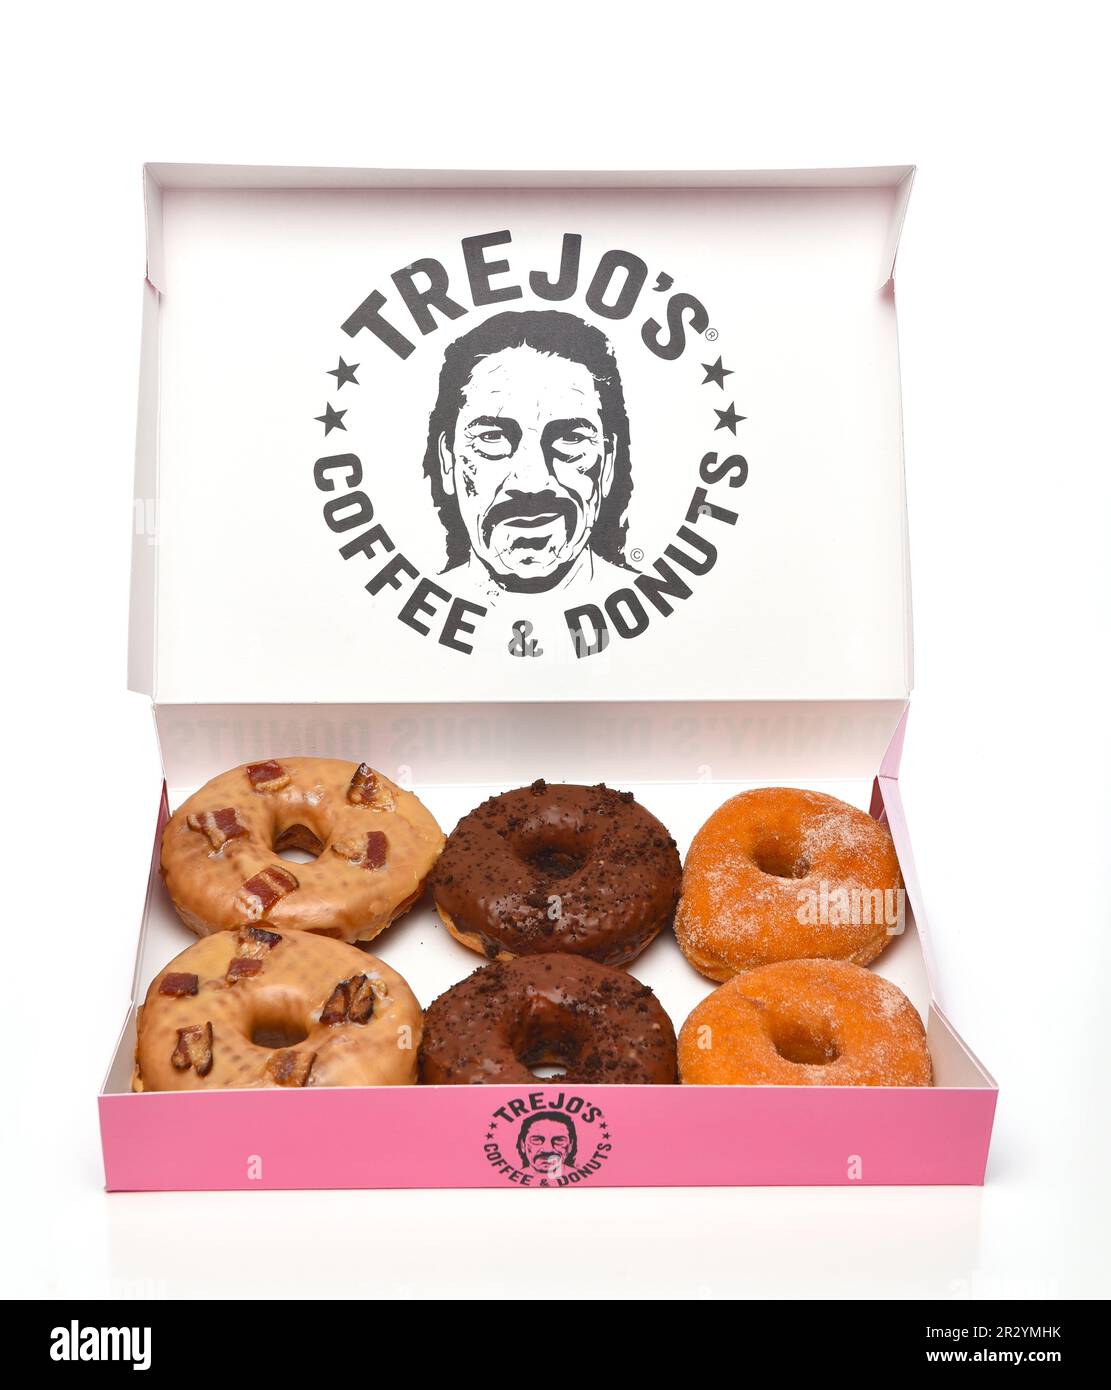 IRVINE, CALIFORNIE - 12 MAI 2023 : une boîte de beignets de Trejos Coffee et Donuts - avec des variétés Maple Pig, Abuelita et Lowrider. Banque D'Images